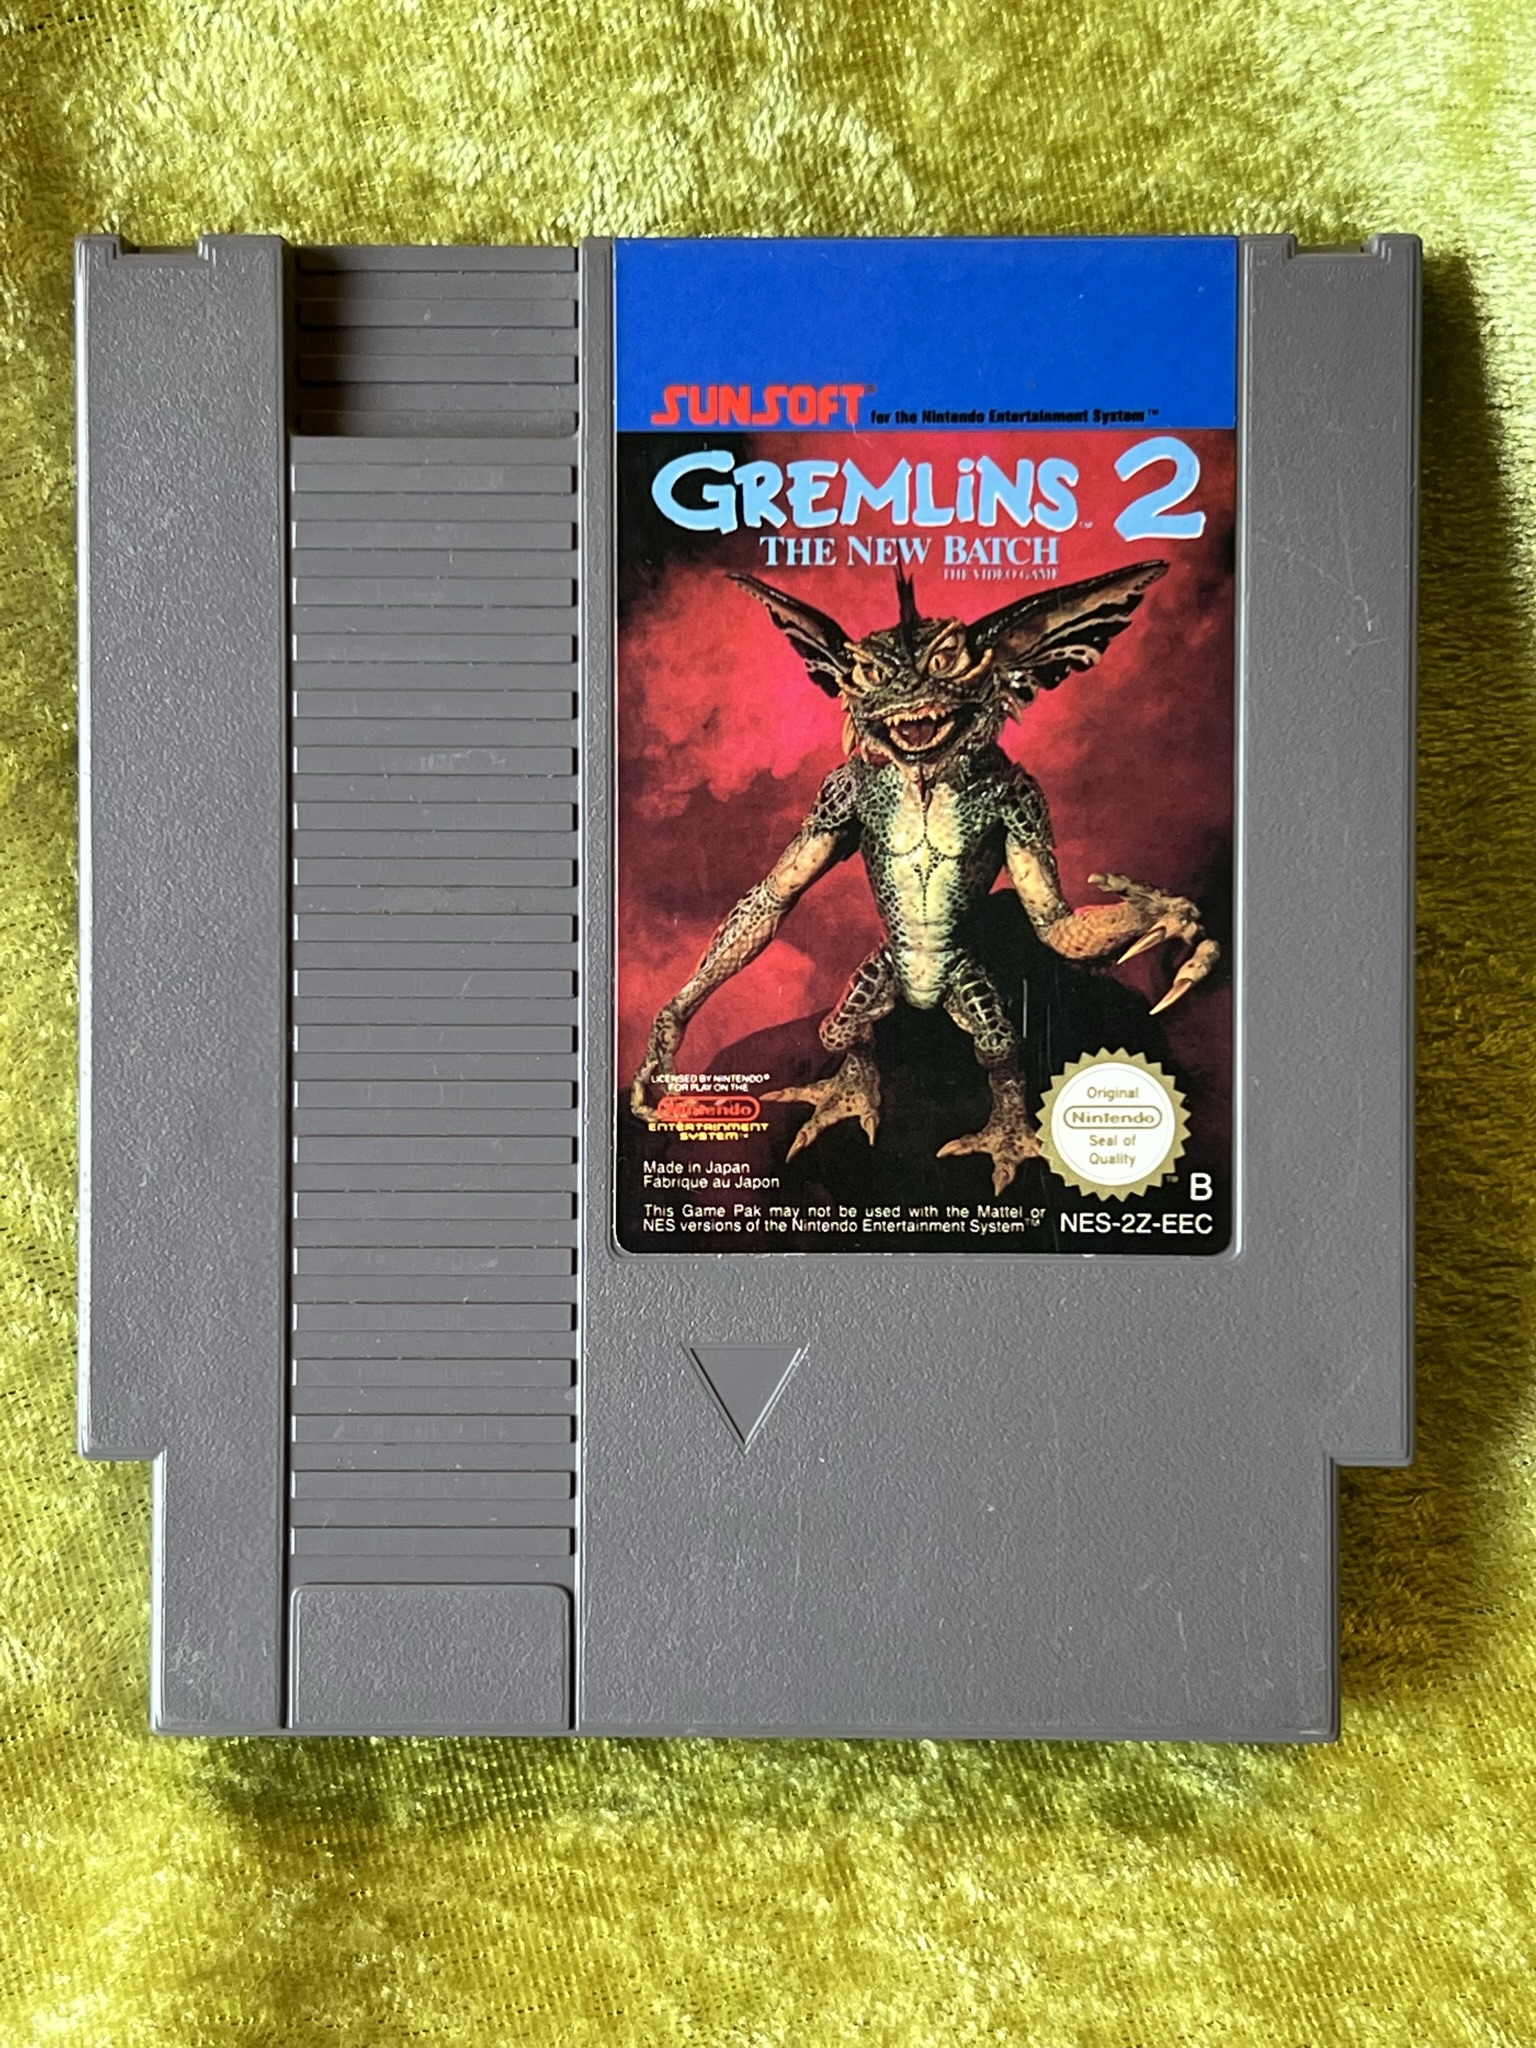 Grimlins 2